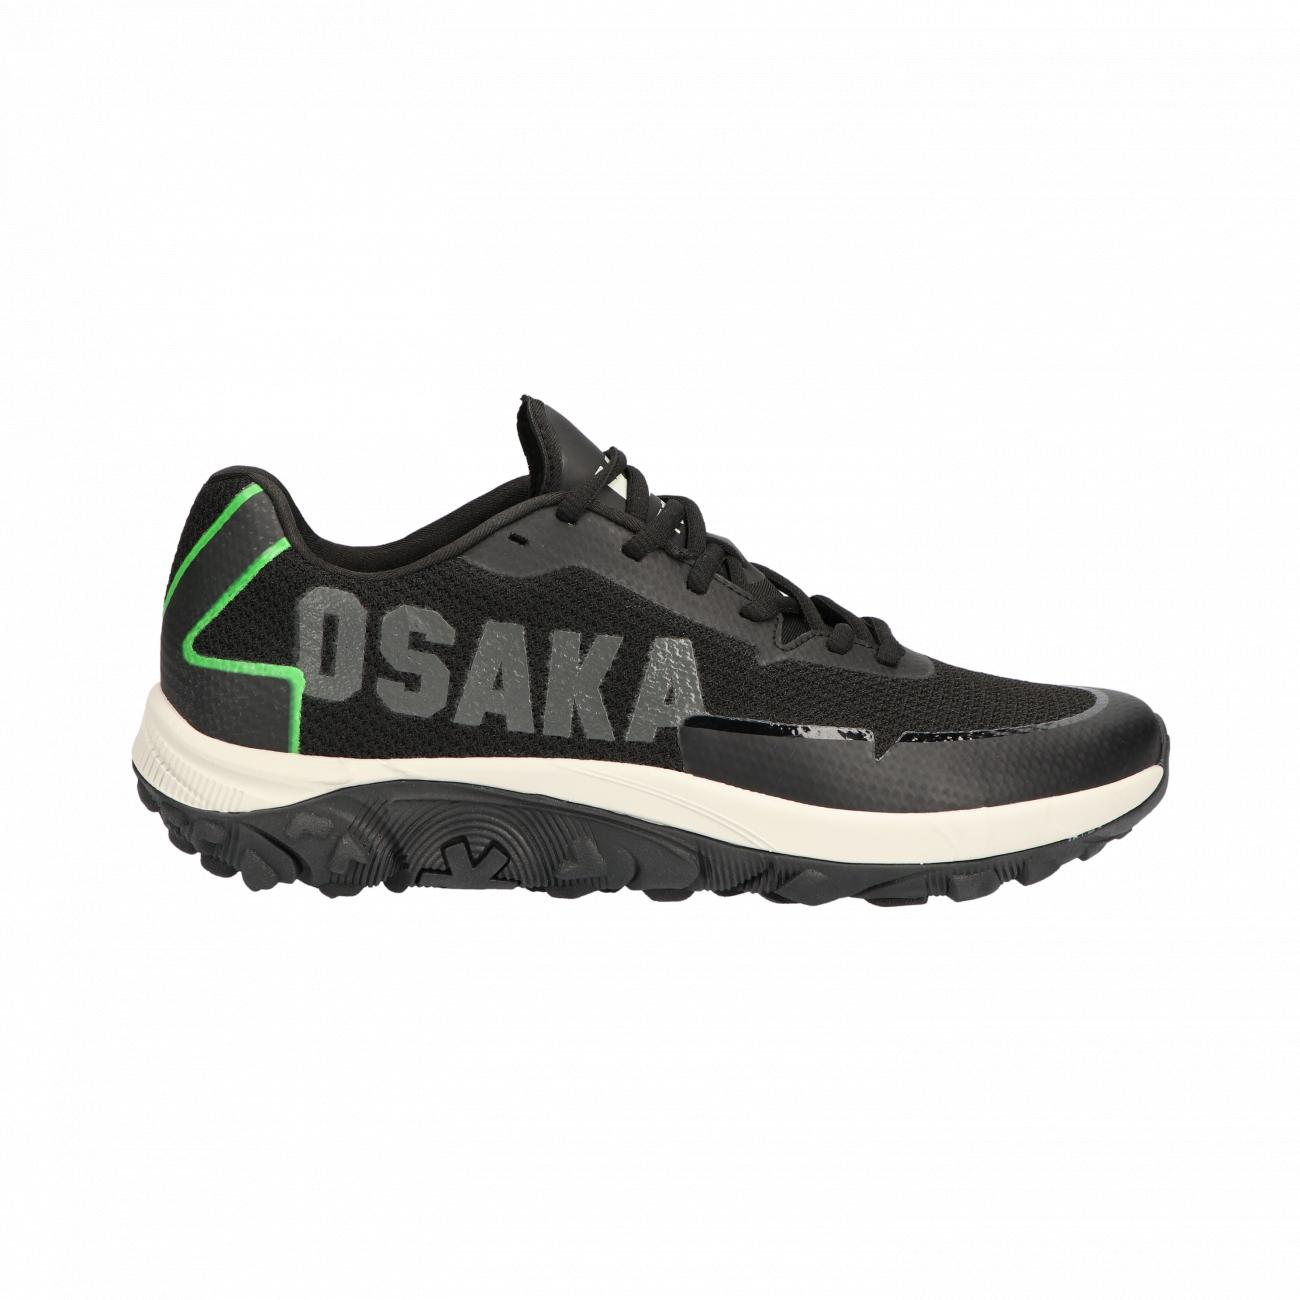 Osaka KAI Shoes